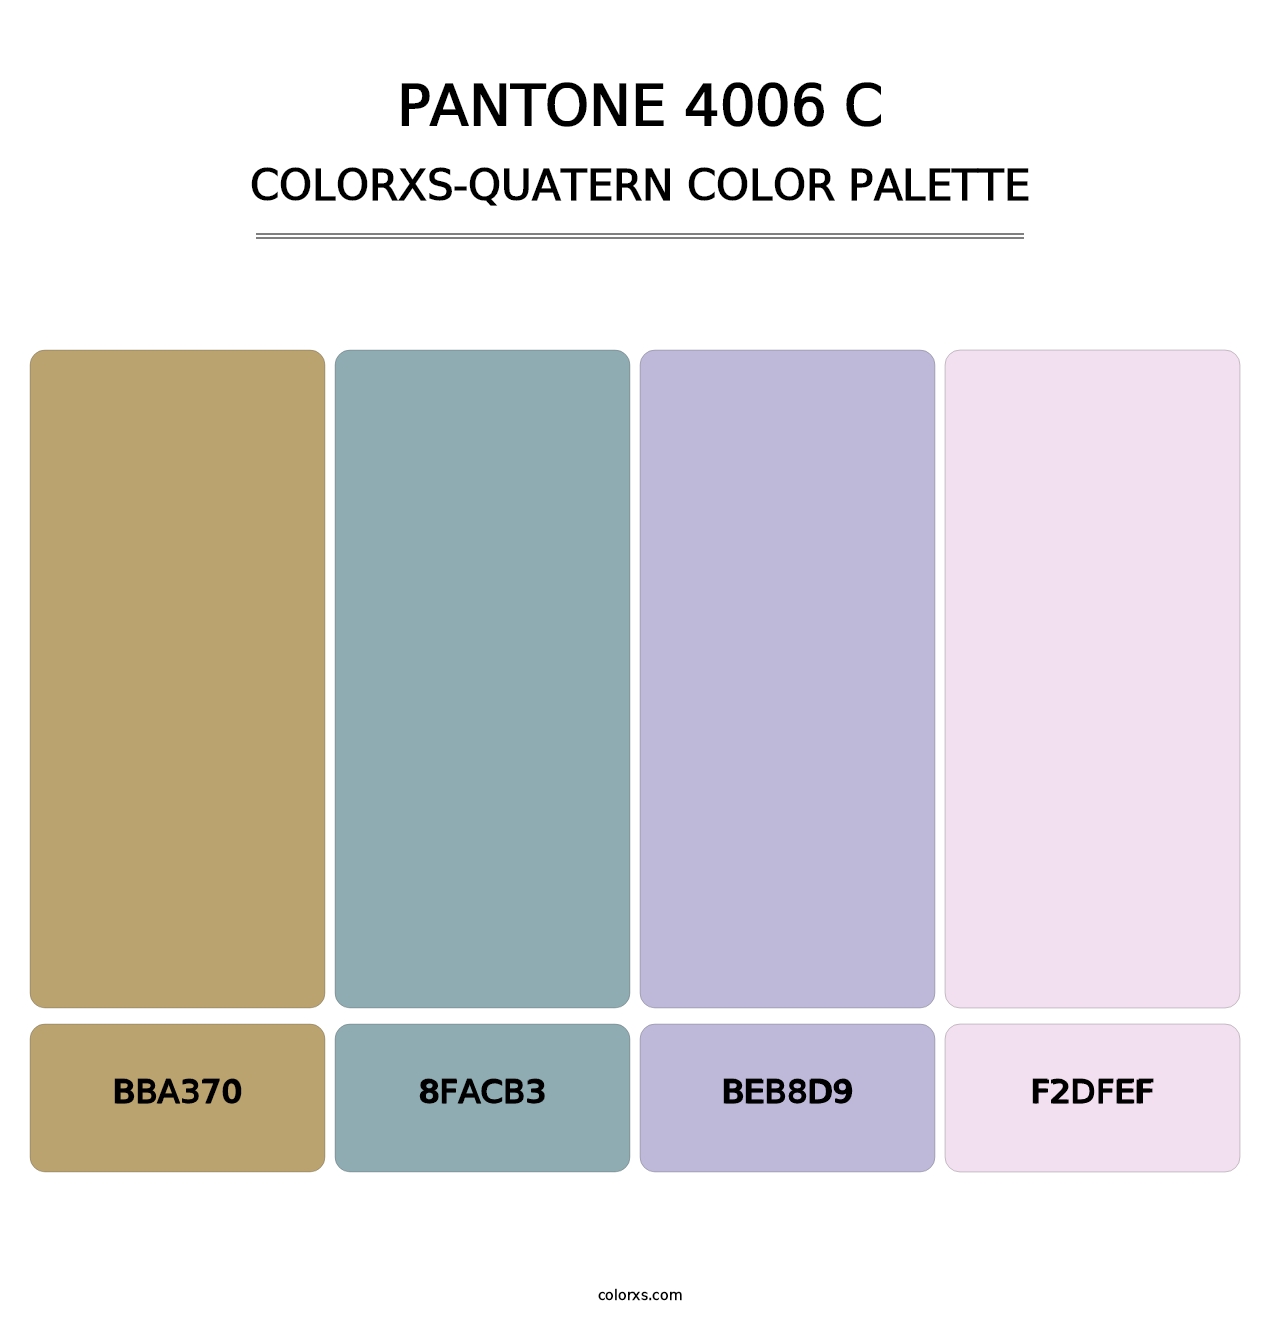 PANTONE 4006 C - Colorxs Quatern Palette